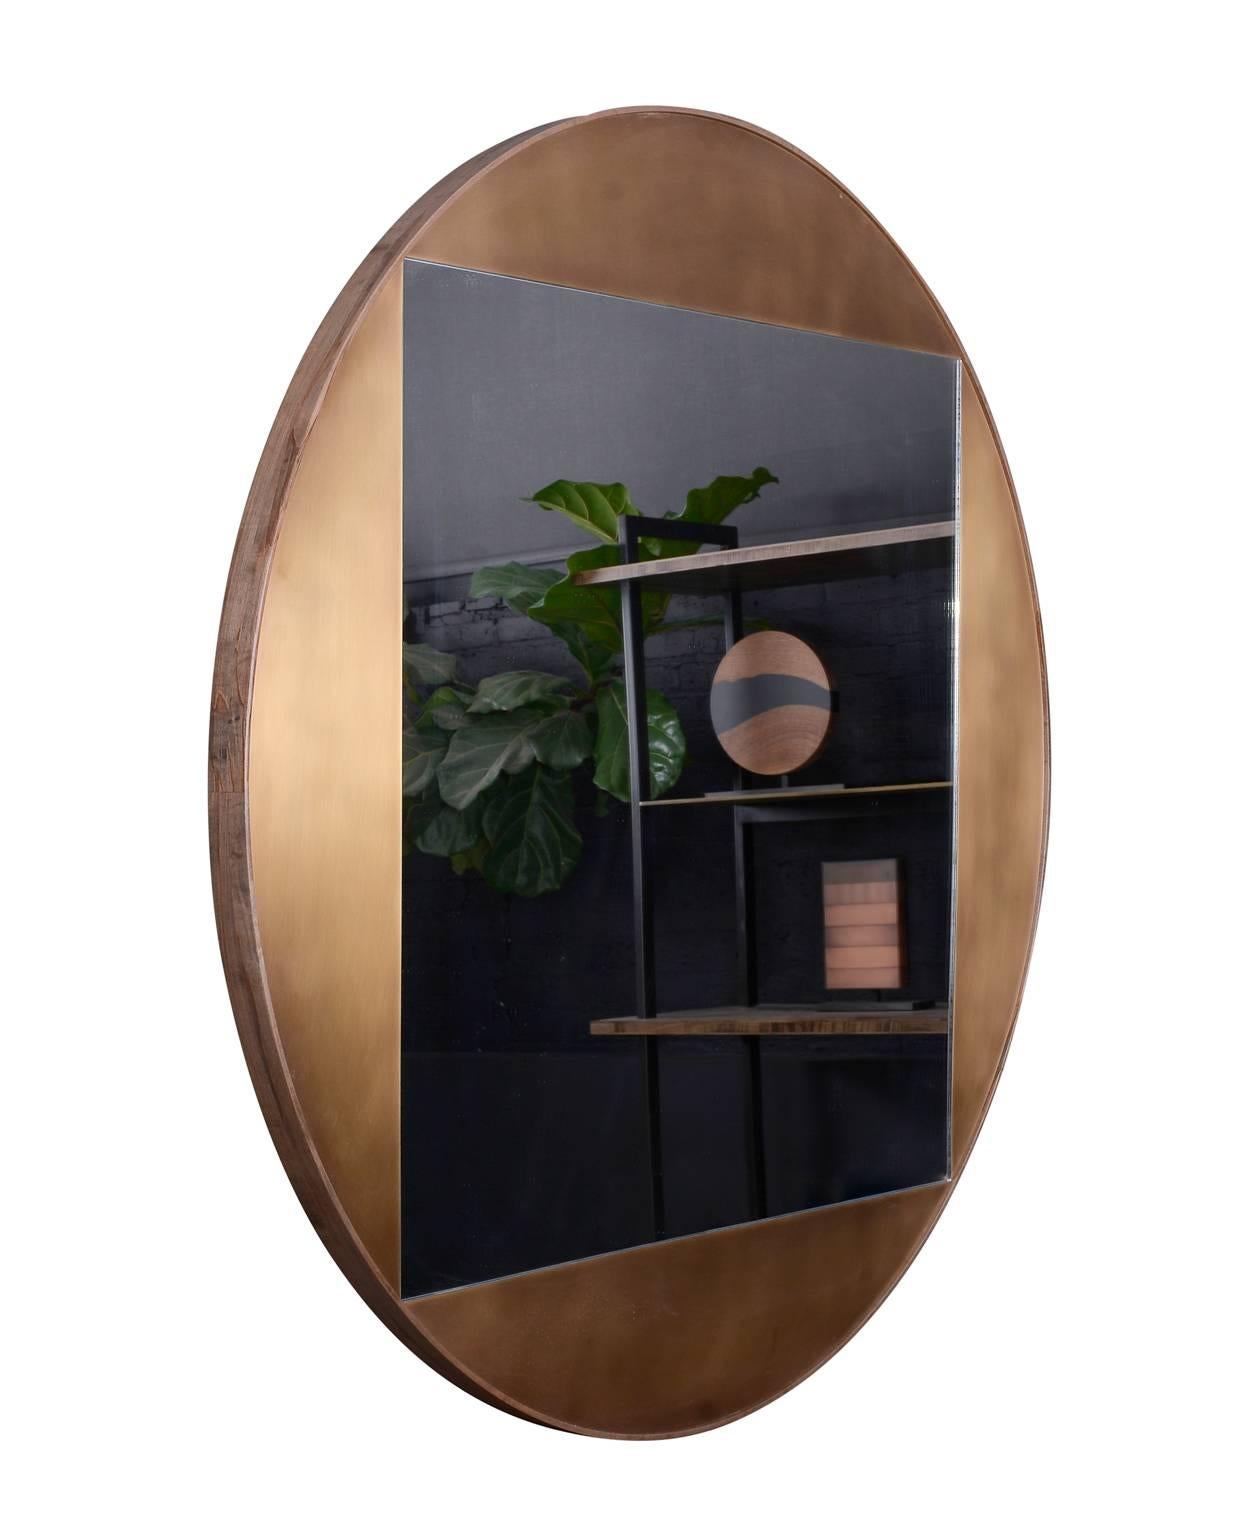 Faisant partie de l'élégante collection Gotham, ce miroir rond est composé de bronze patiné et d'érable ambrosia oxydé. La juxtaposition des formes, à la fois tranchantes et courbes, confère équilibre et sophistication à cette pièce. Délai de